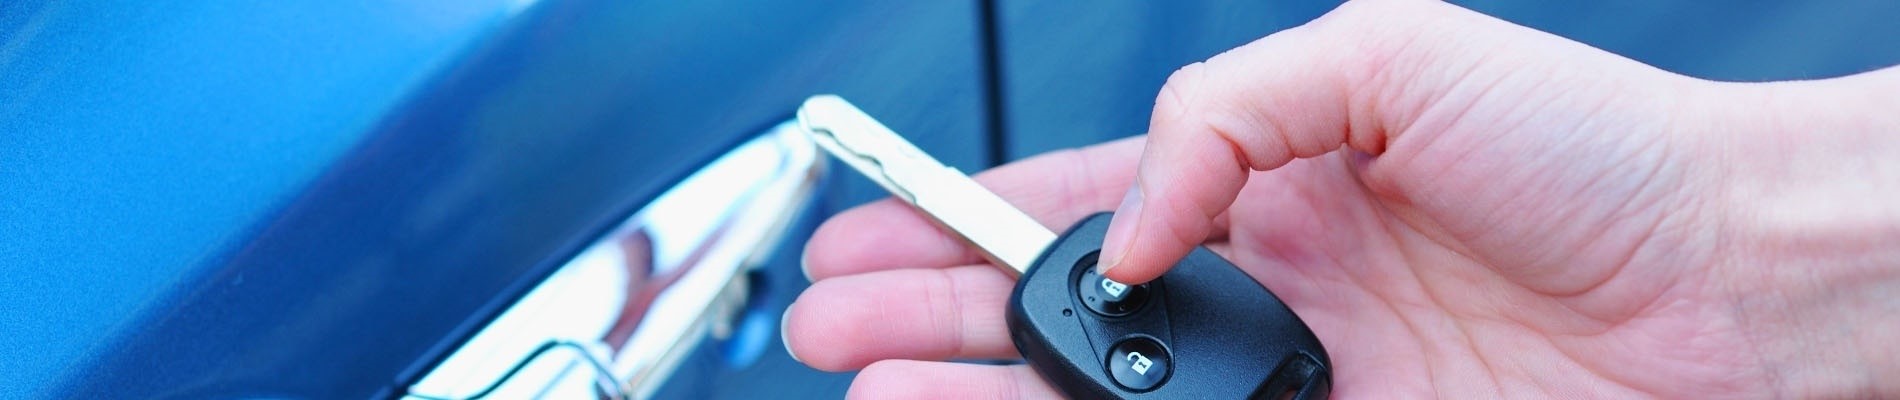 Need New keys?, Car Locksmith in greer SC